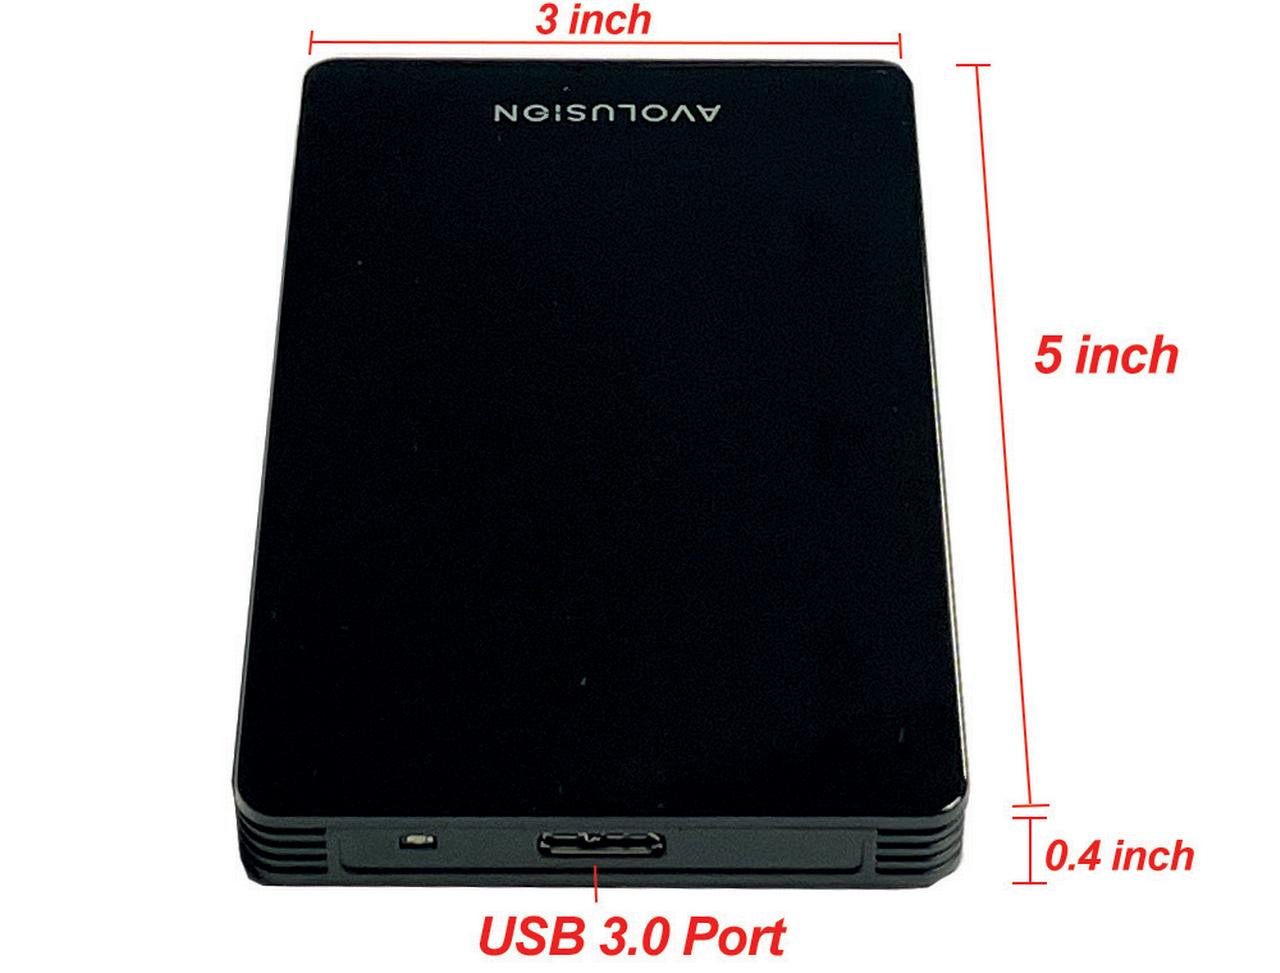 1TB Portable Gaming PS5 Hard Drive